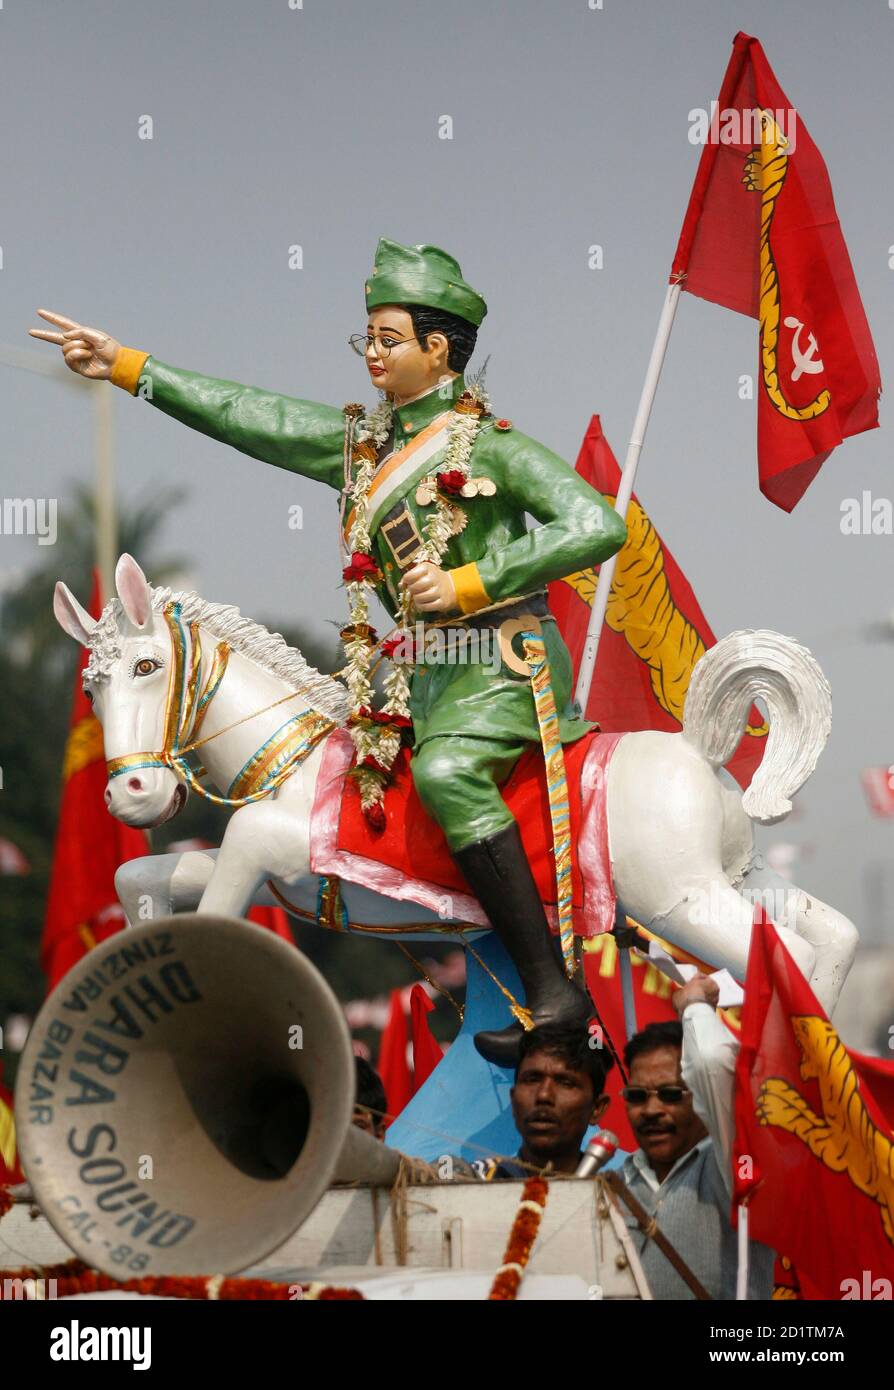 Les militants du parti Forward Bloc criaient des slogans à côté d'une statue du fondateur du parti, Subhas Chandra Bose, un patriote indien célèbre et leader à la fin des années 1930 et 1940, dans la ville indienne de Kolkata, dans l'est du pays, le 23 janvier 2008. Des millions d'Indiens vénèrent Bose, qui a dirigé l'armée nationale indienne rebelle contre la domination coloniale britannique en alliance avec les Japonais pendant la Seconde Guerre mondiale, et son anniversaire le 23 janvier est célébré comme un jour férié dans son état natal, le Bengale occidental. REUTERS/Jayanta Shaw (INDE) Banque D'Images